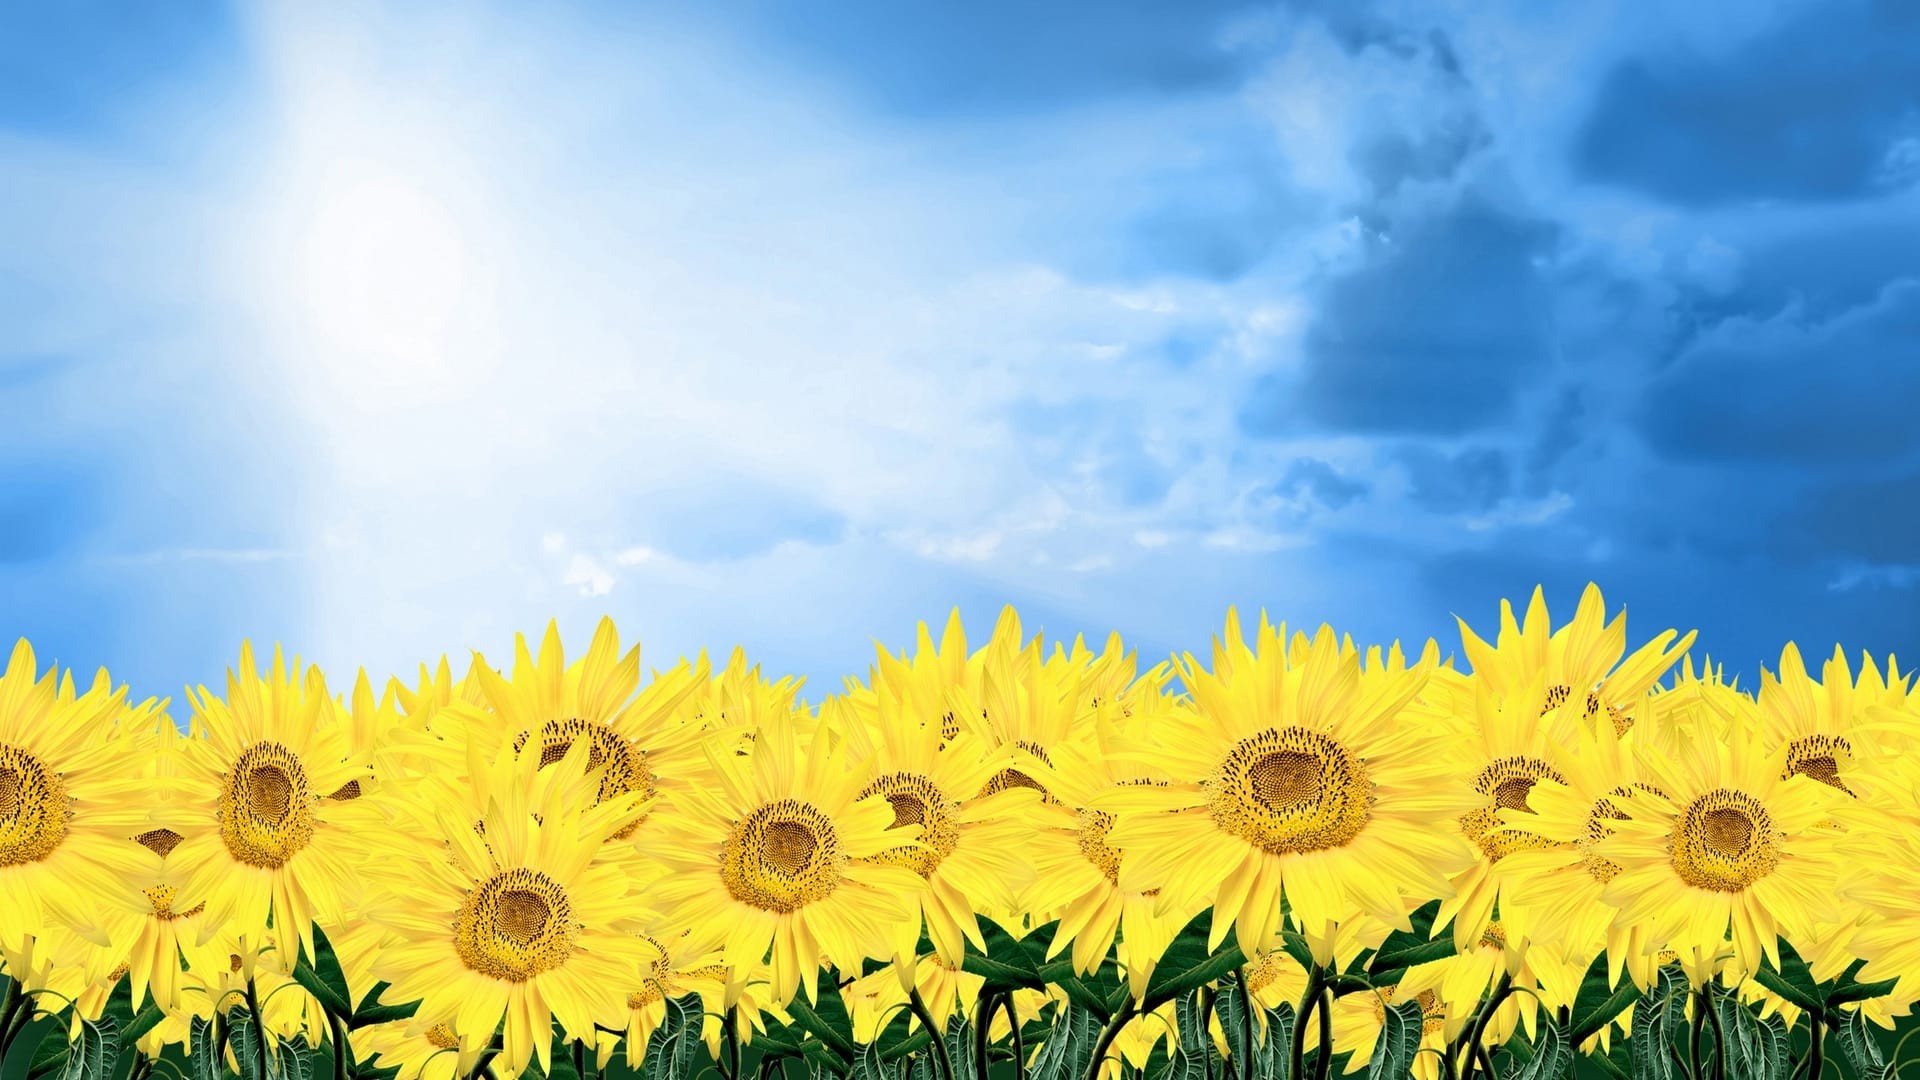 Summer Sunflower Nature Wallpaper Background Image Widescreen - NU ...